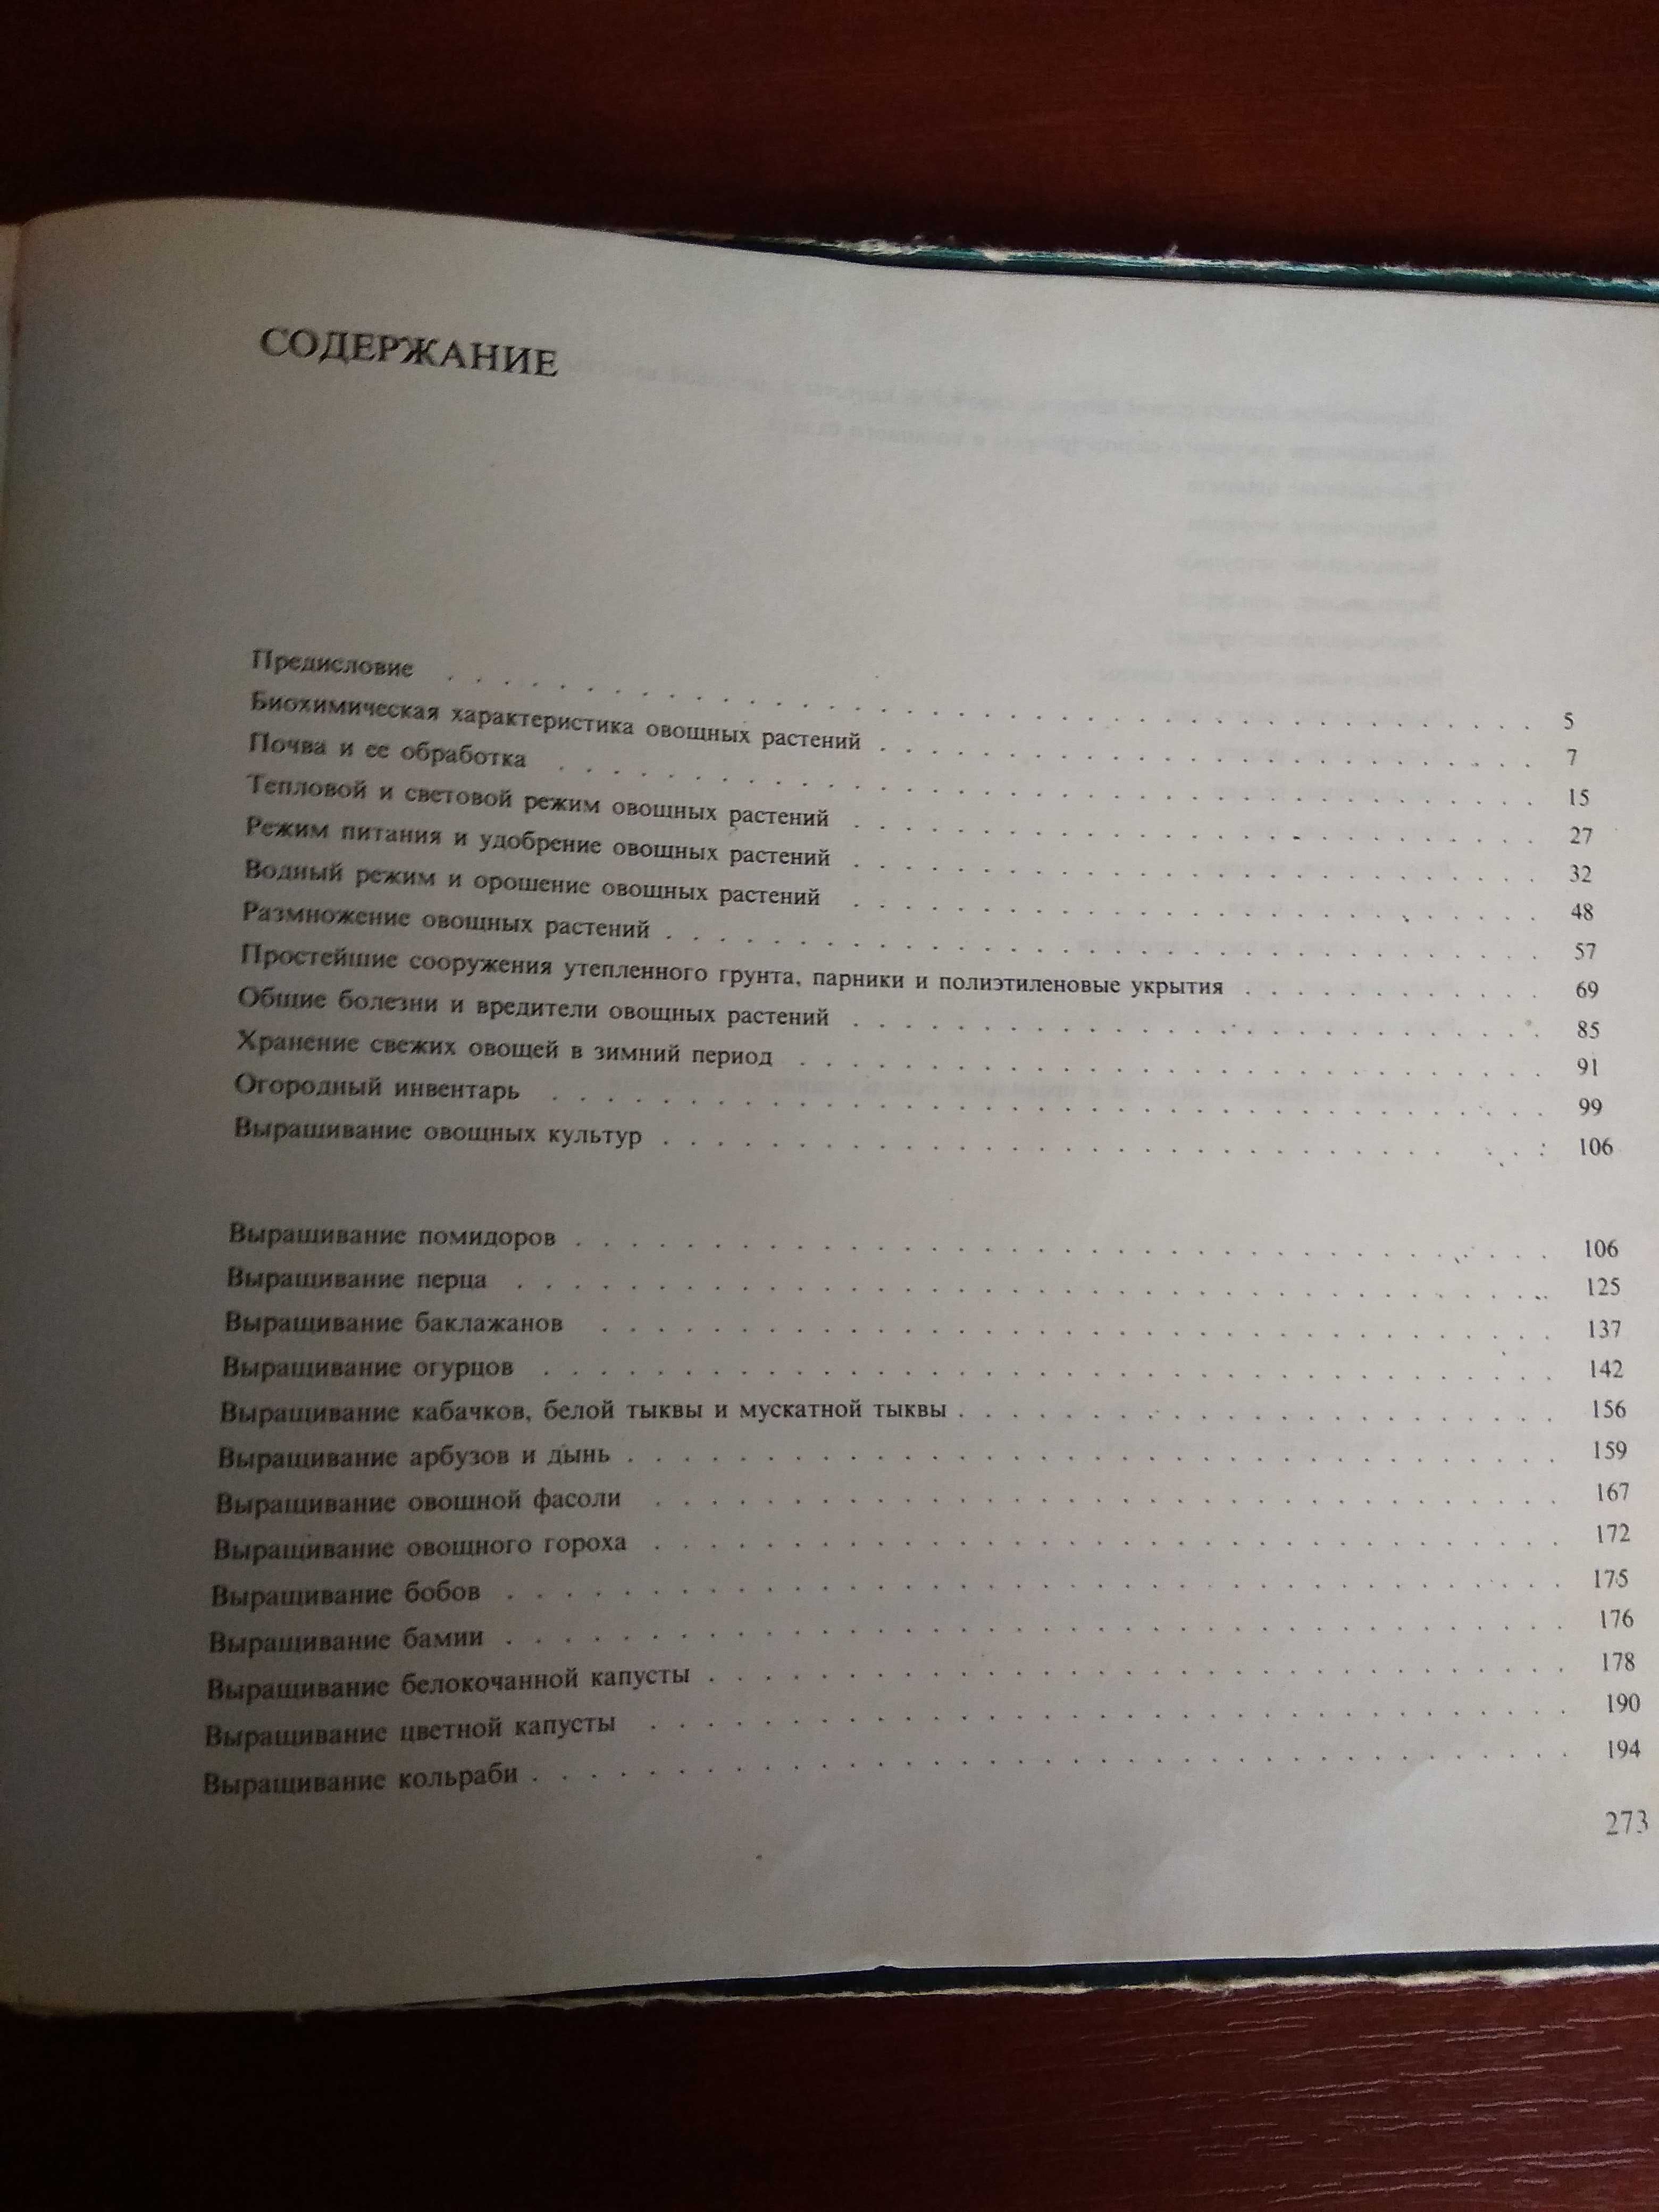 666 советов овощеводу-любителю, София, 1987, 274 стр.